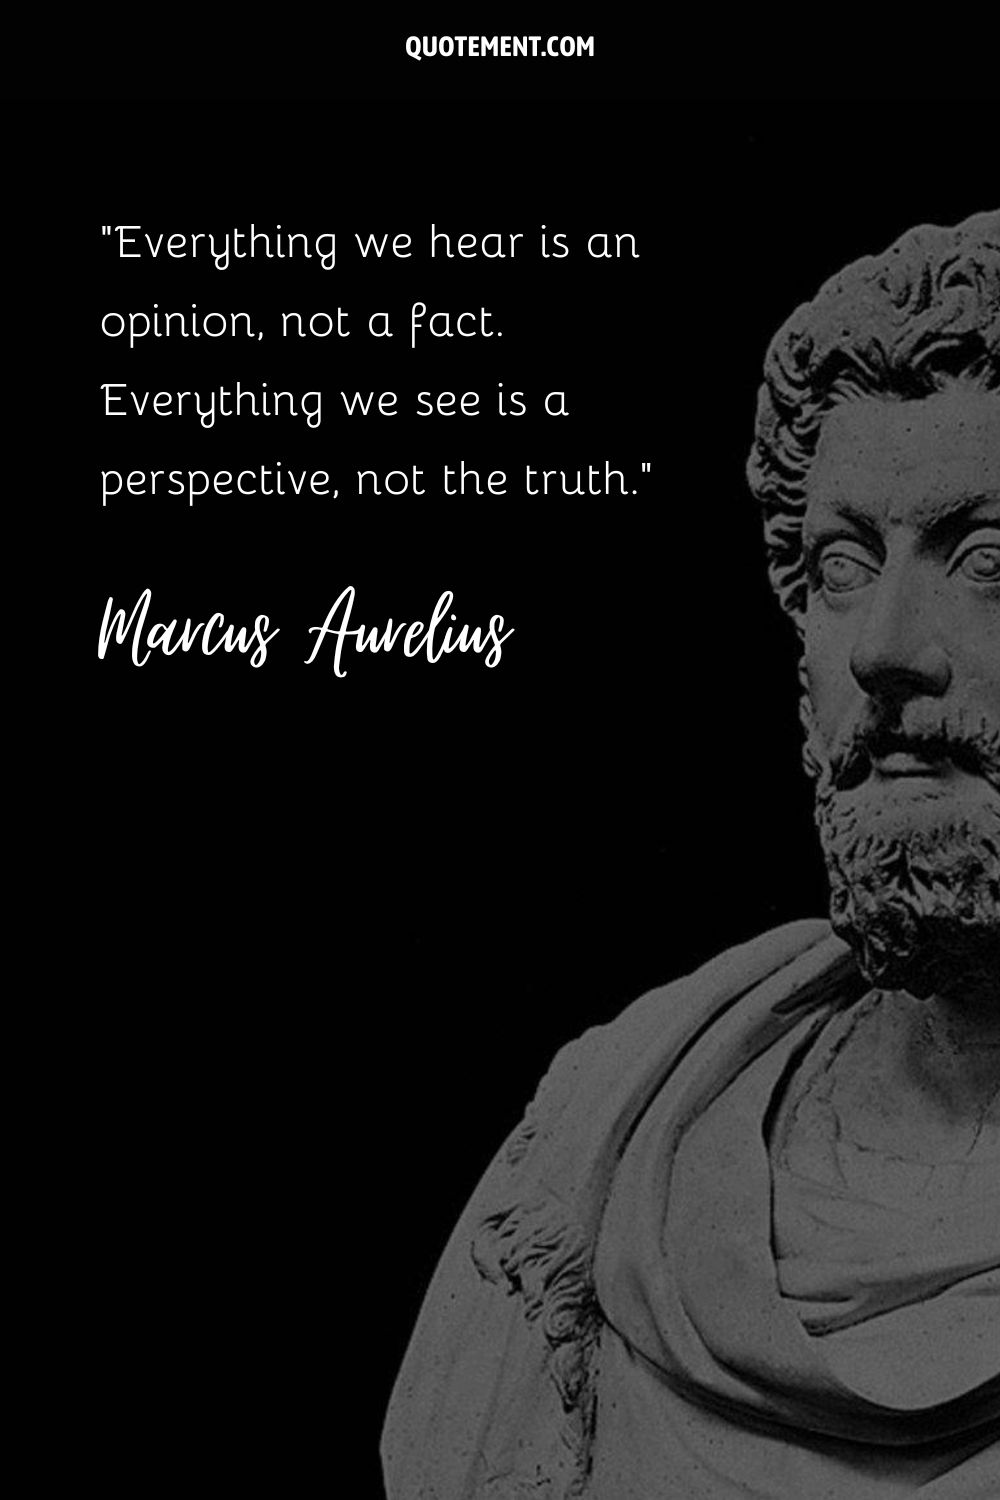 Emperor Marcus Aurelius statue representing the greatest Marcus Aurelius quote.
